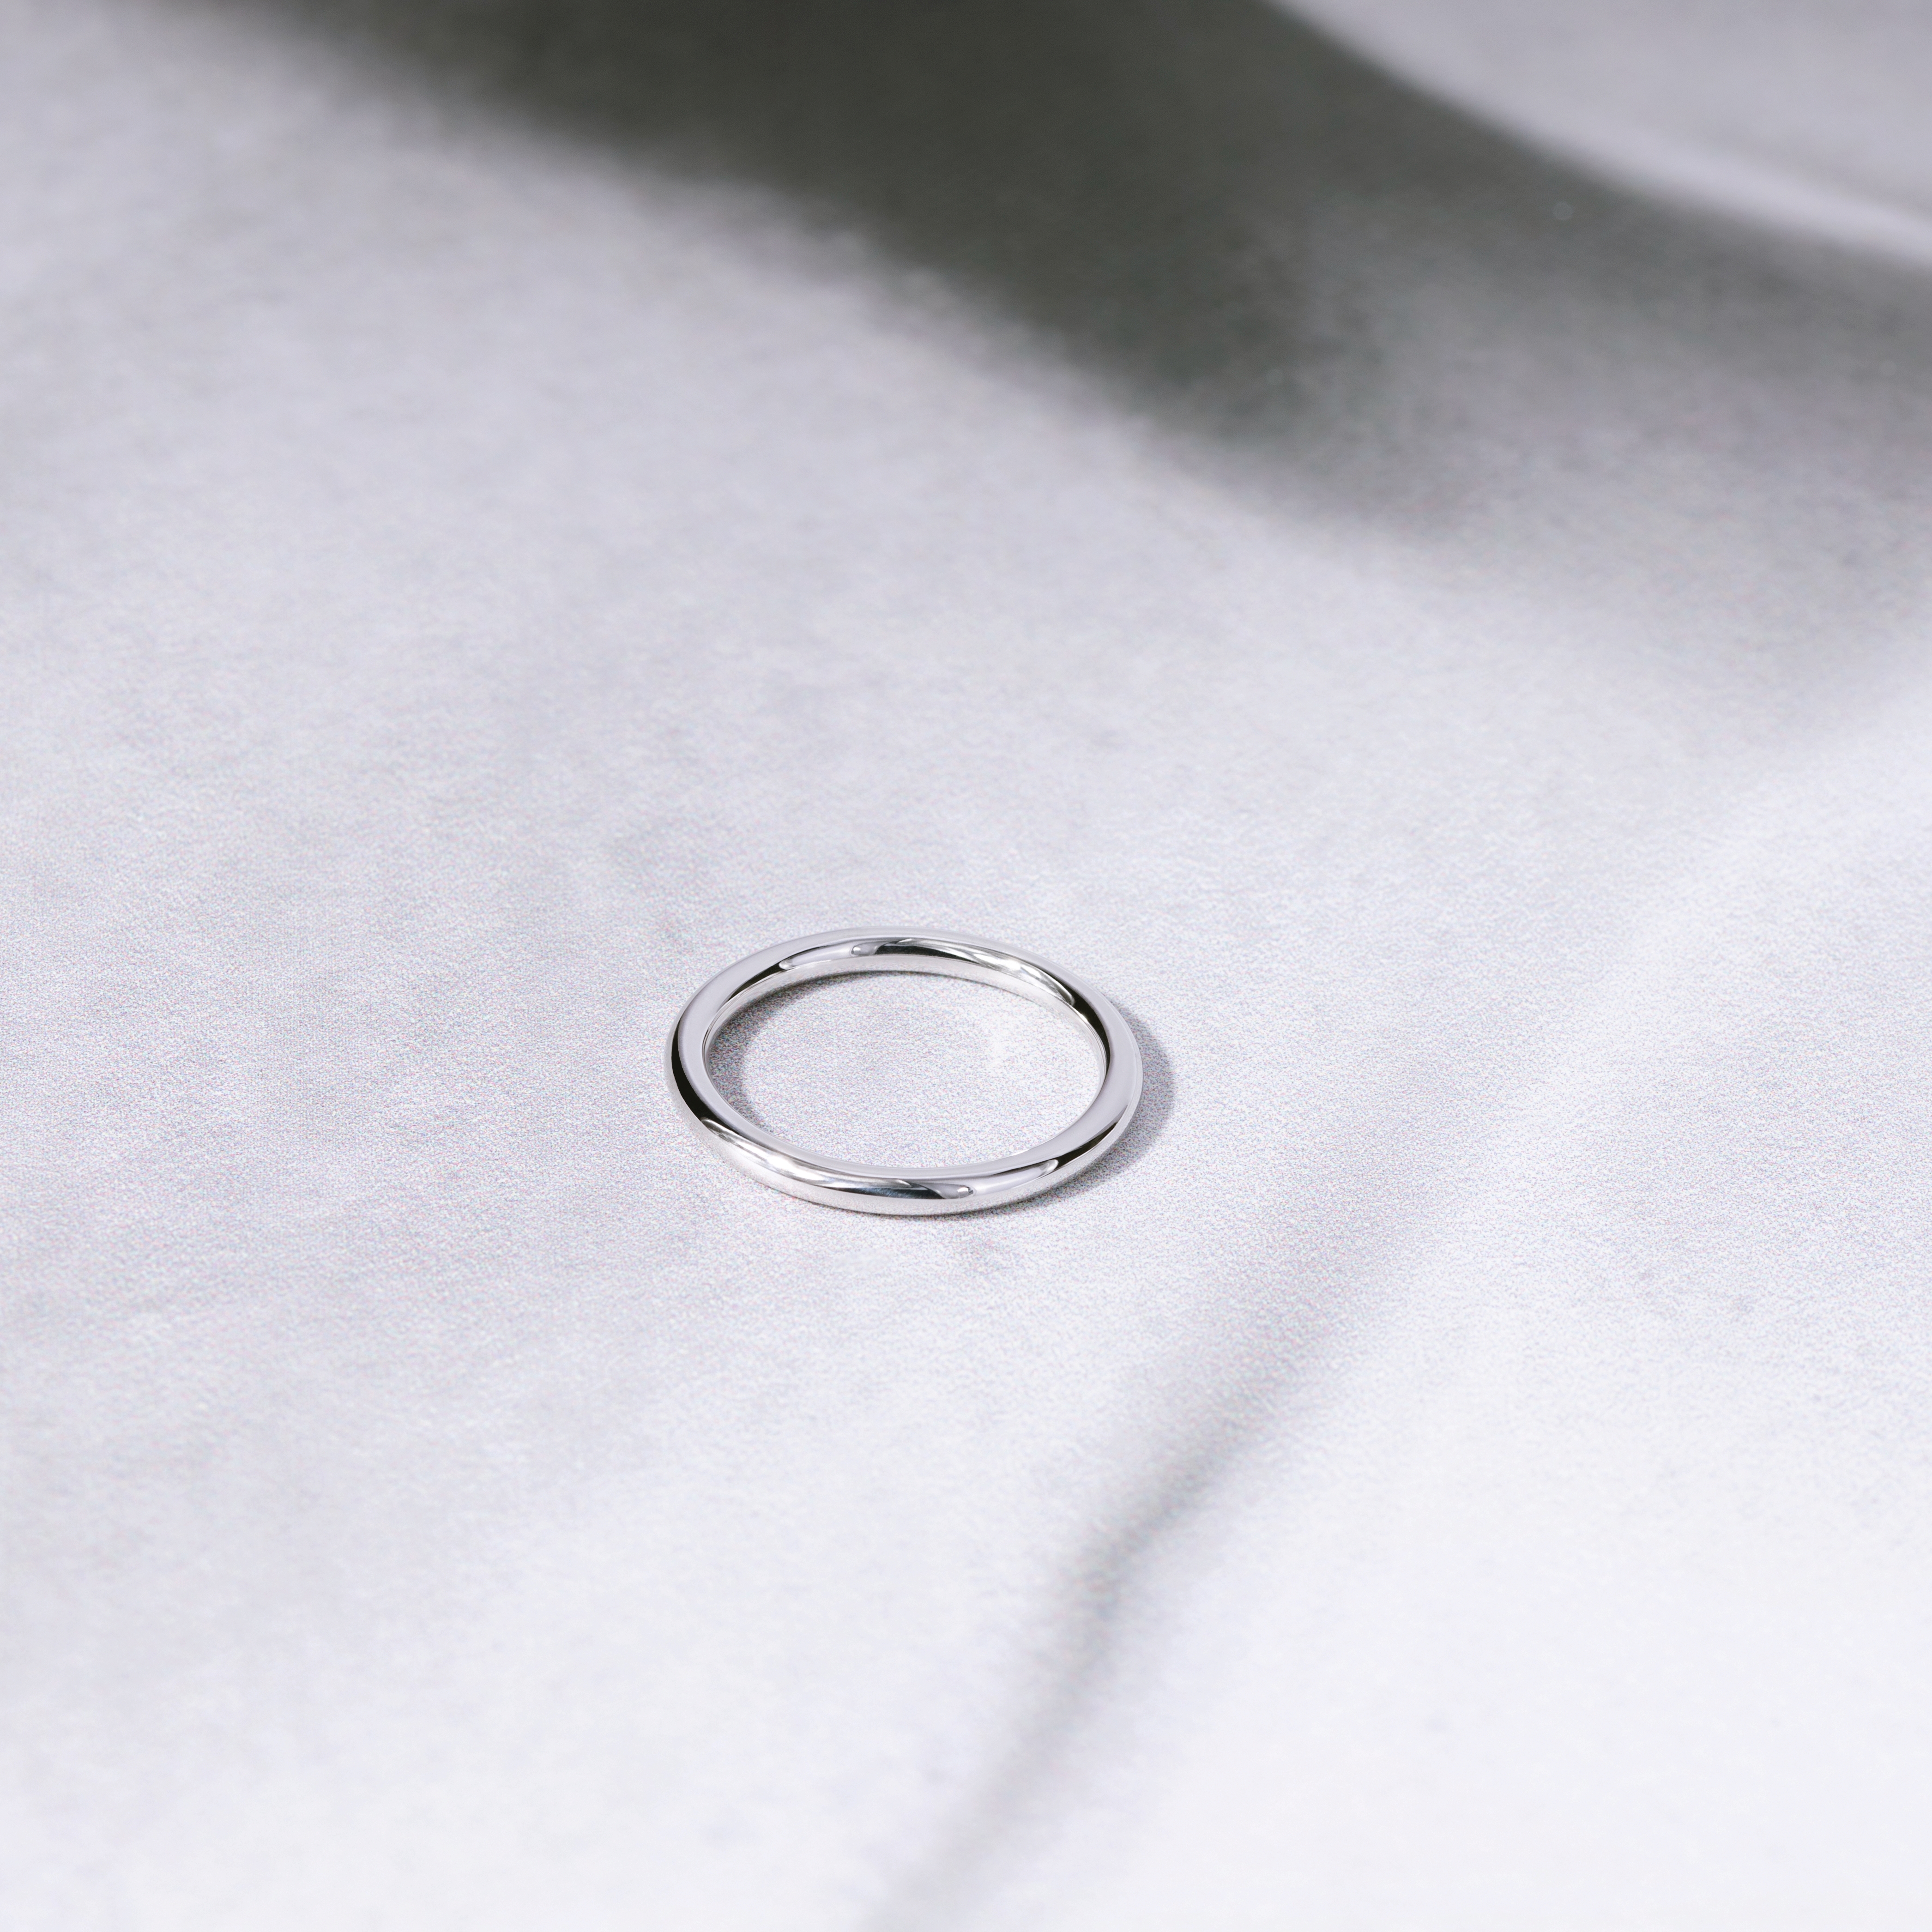 Обручальное кольцо в сечении круг. Белое золото 585 пробы.